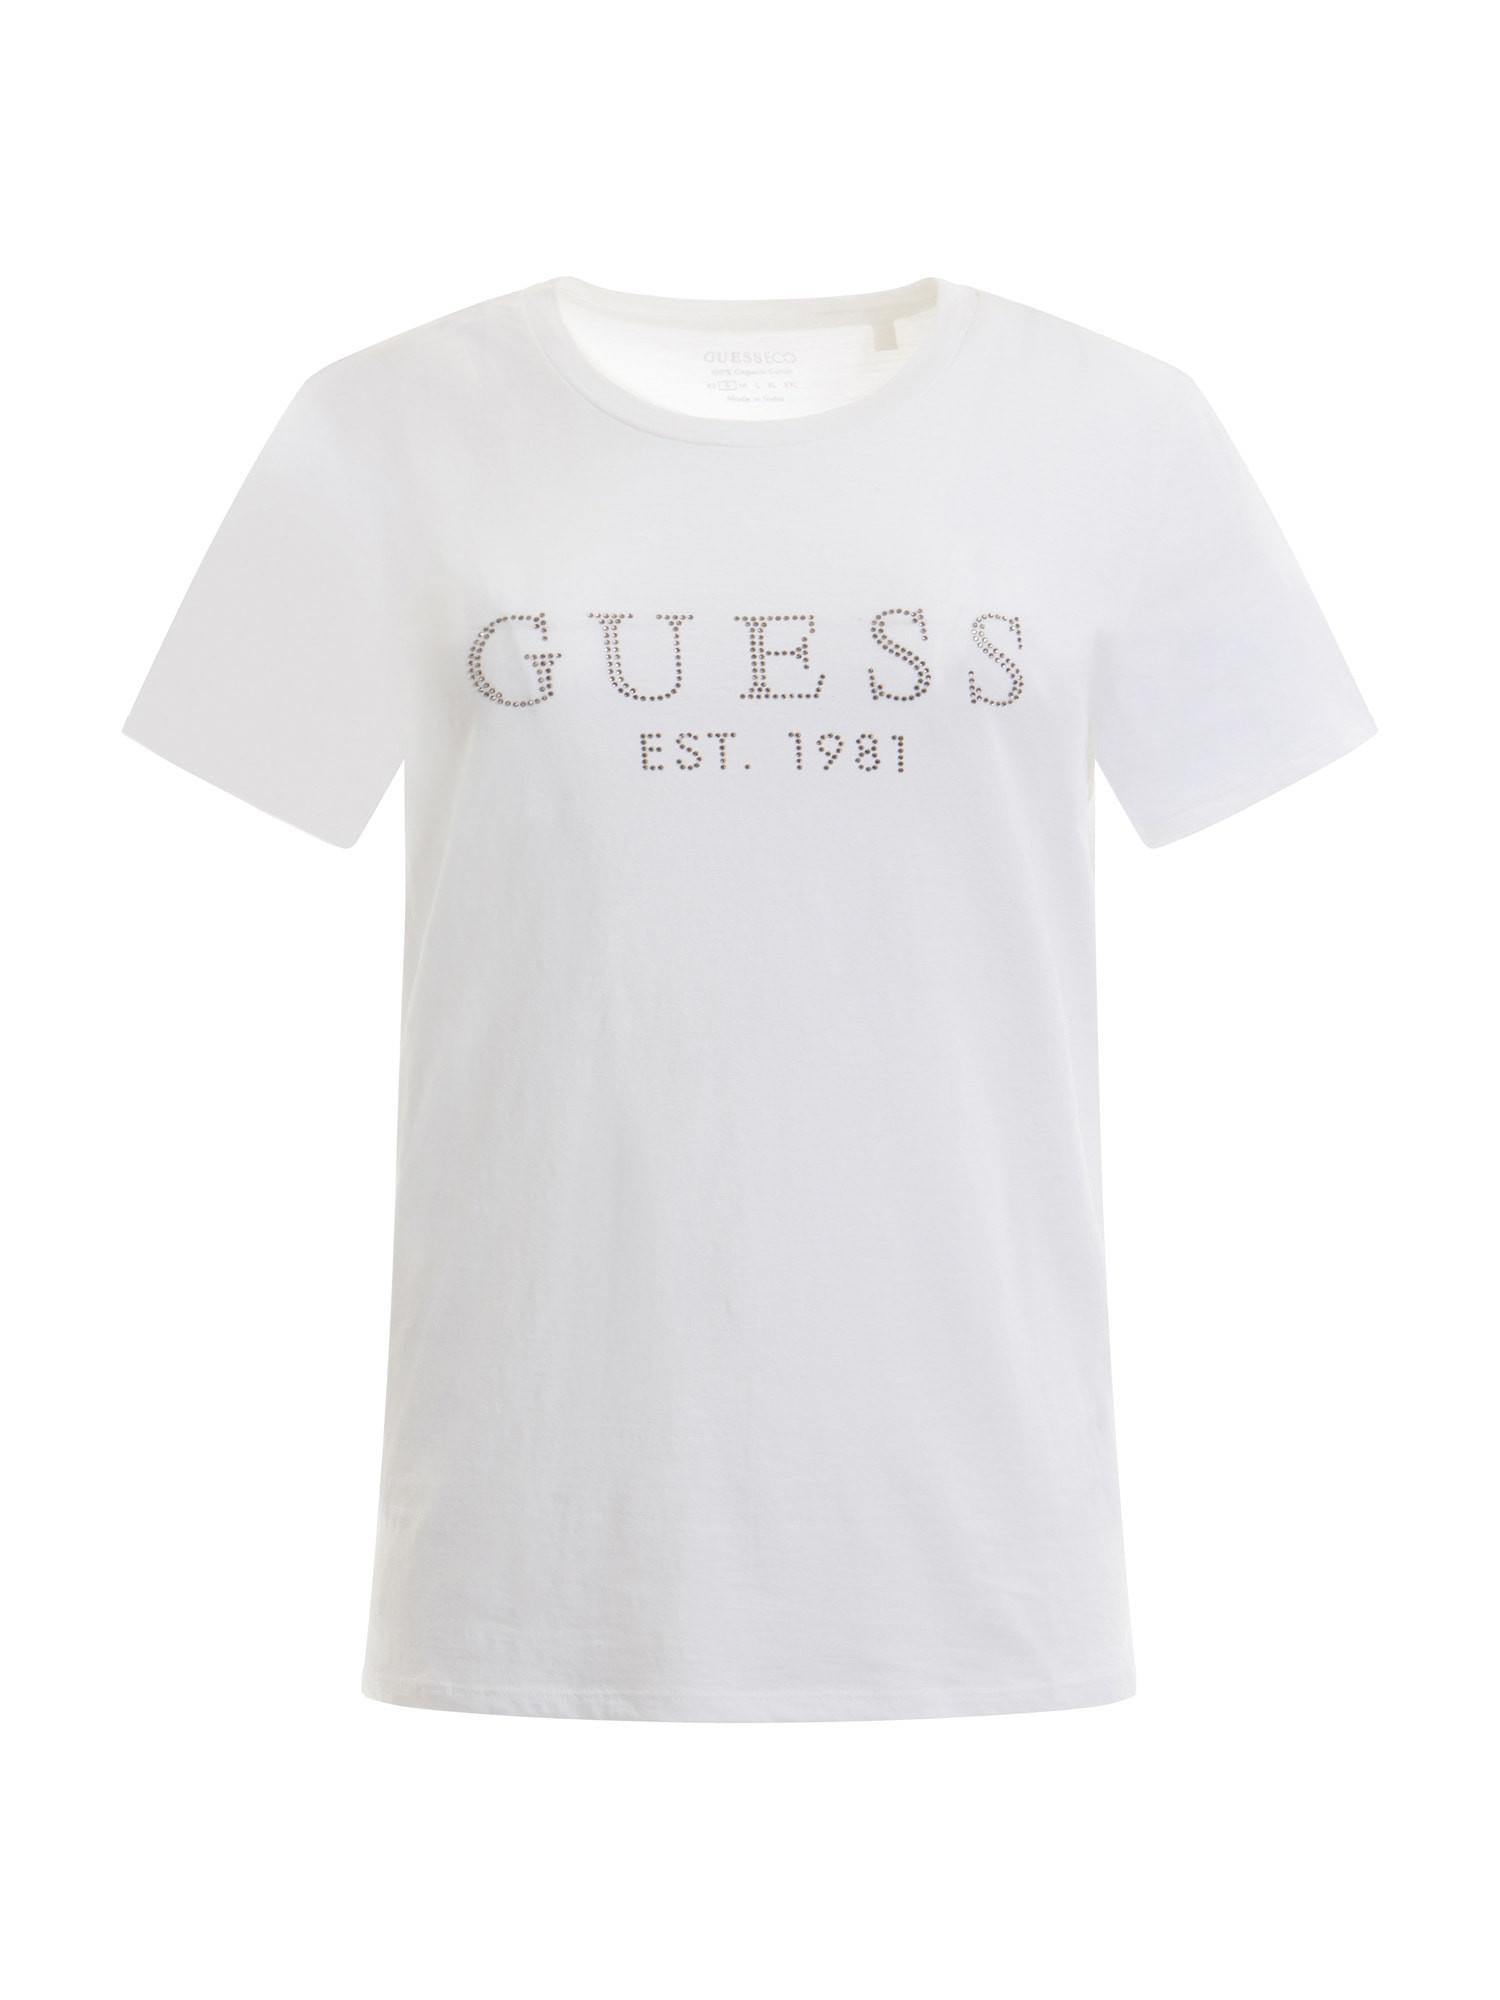 T-Shirt Damski Guess Biały